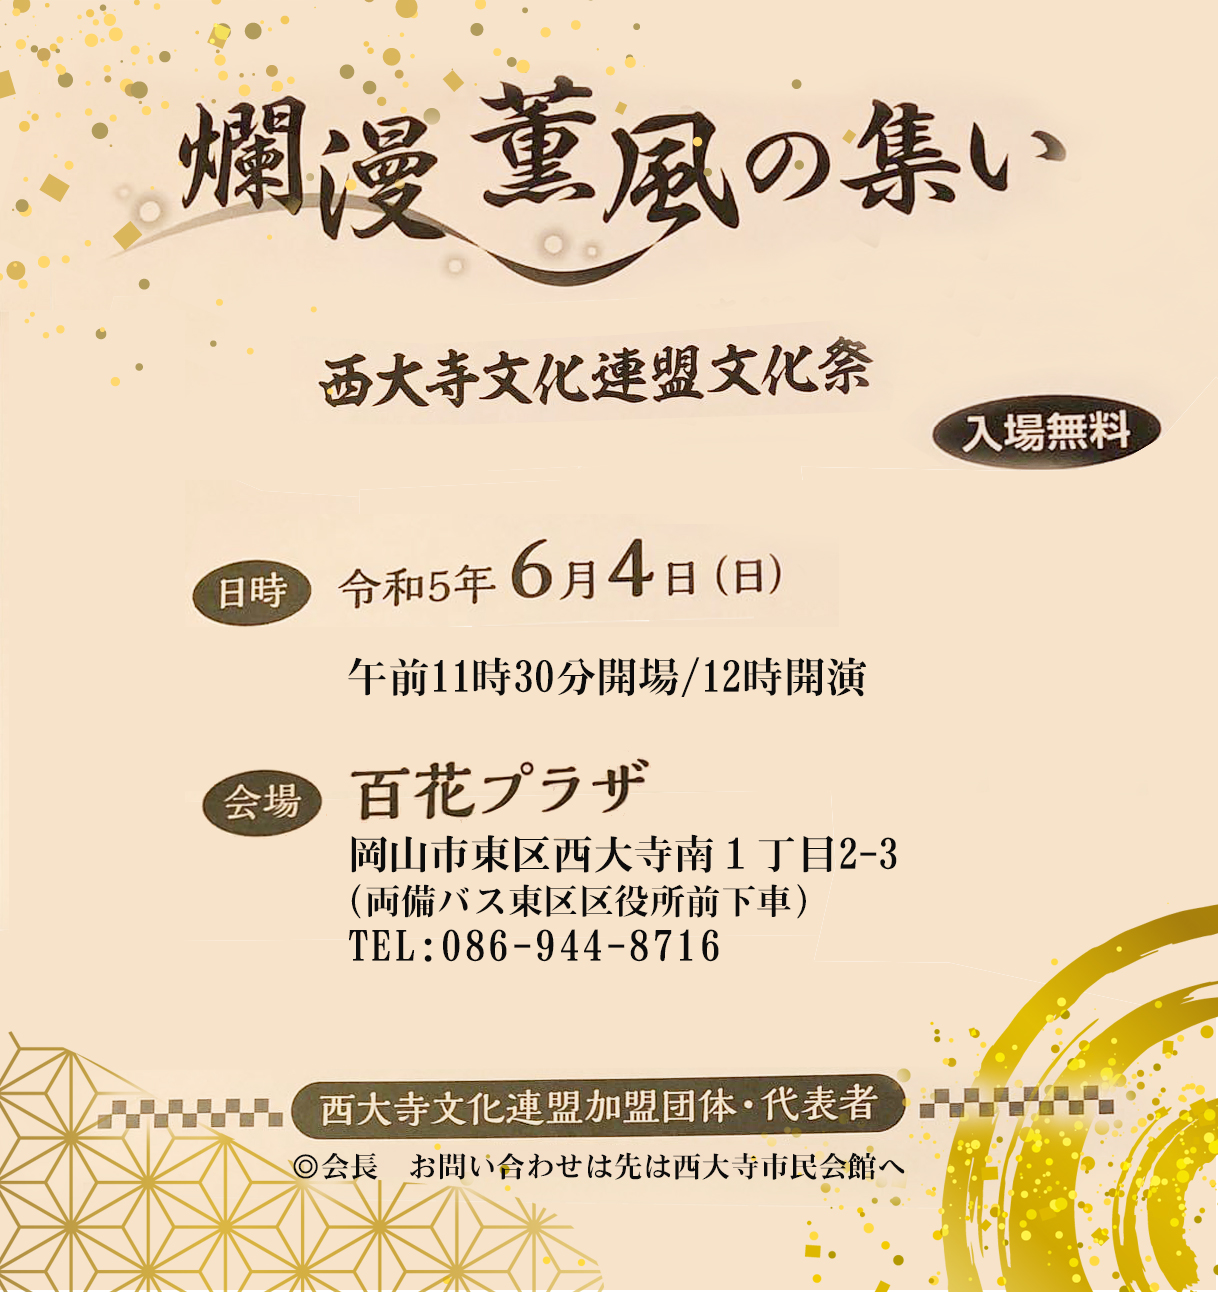 西大寺文化連盟文化祭「爛漫薫風の集い」公演